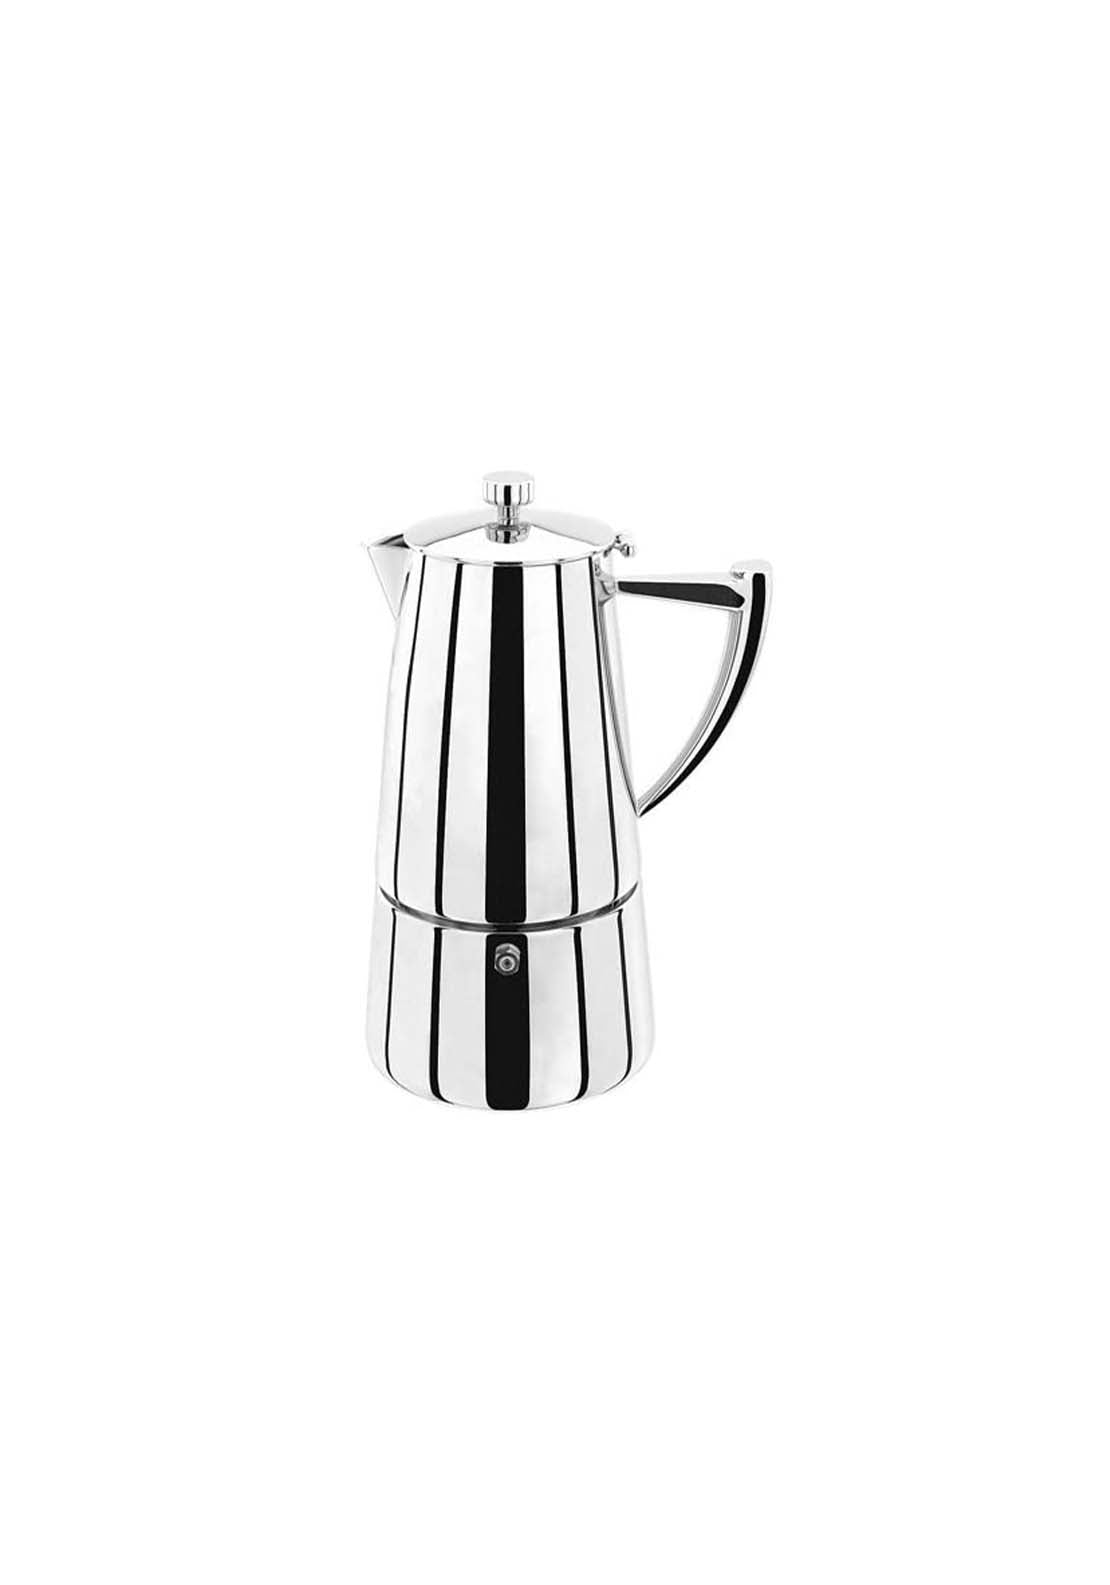 Stellar Art Deco 10 Cup Hob Top Espresso Maker | SC64 1 Shaws Department Stores